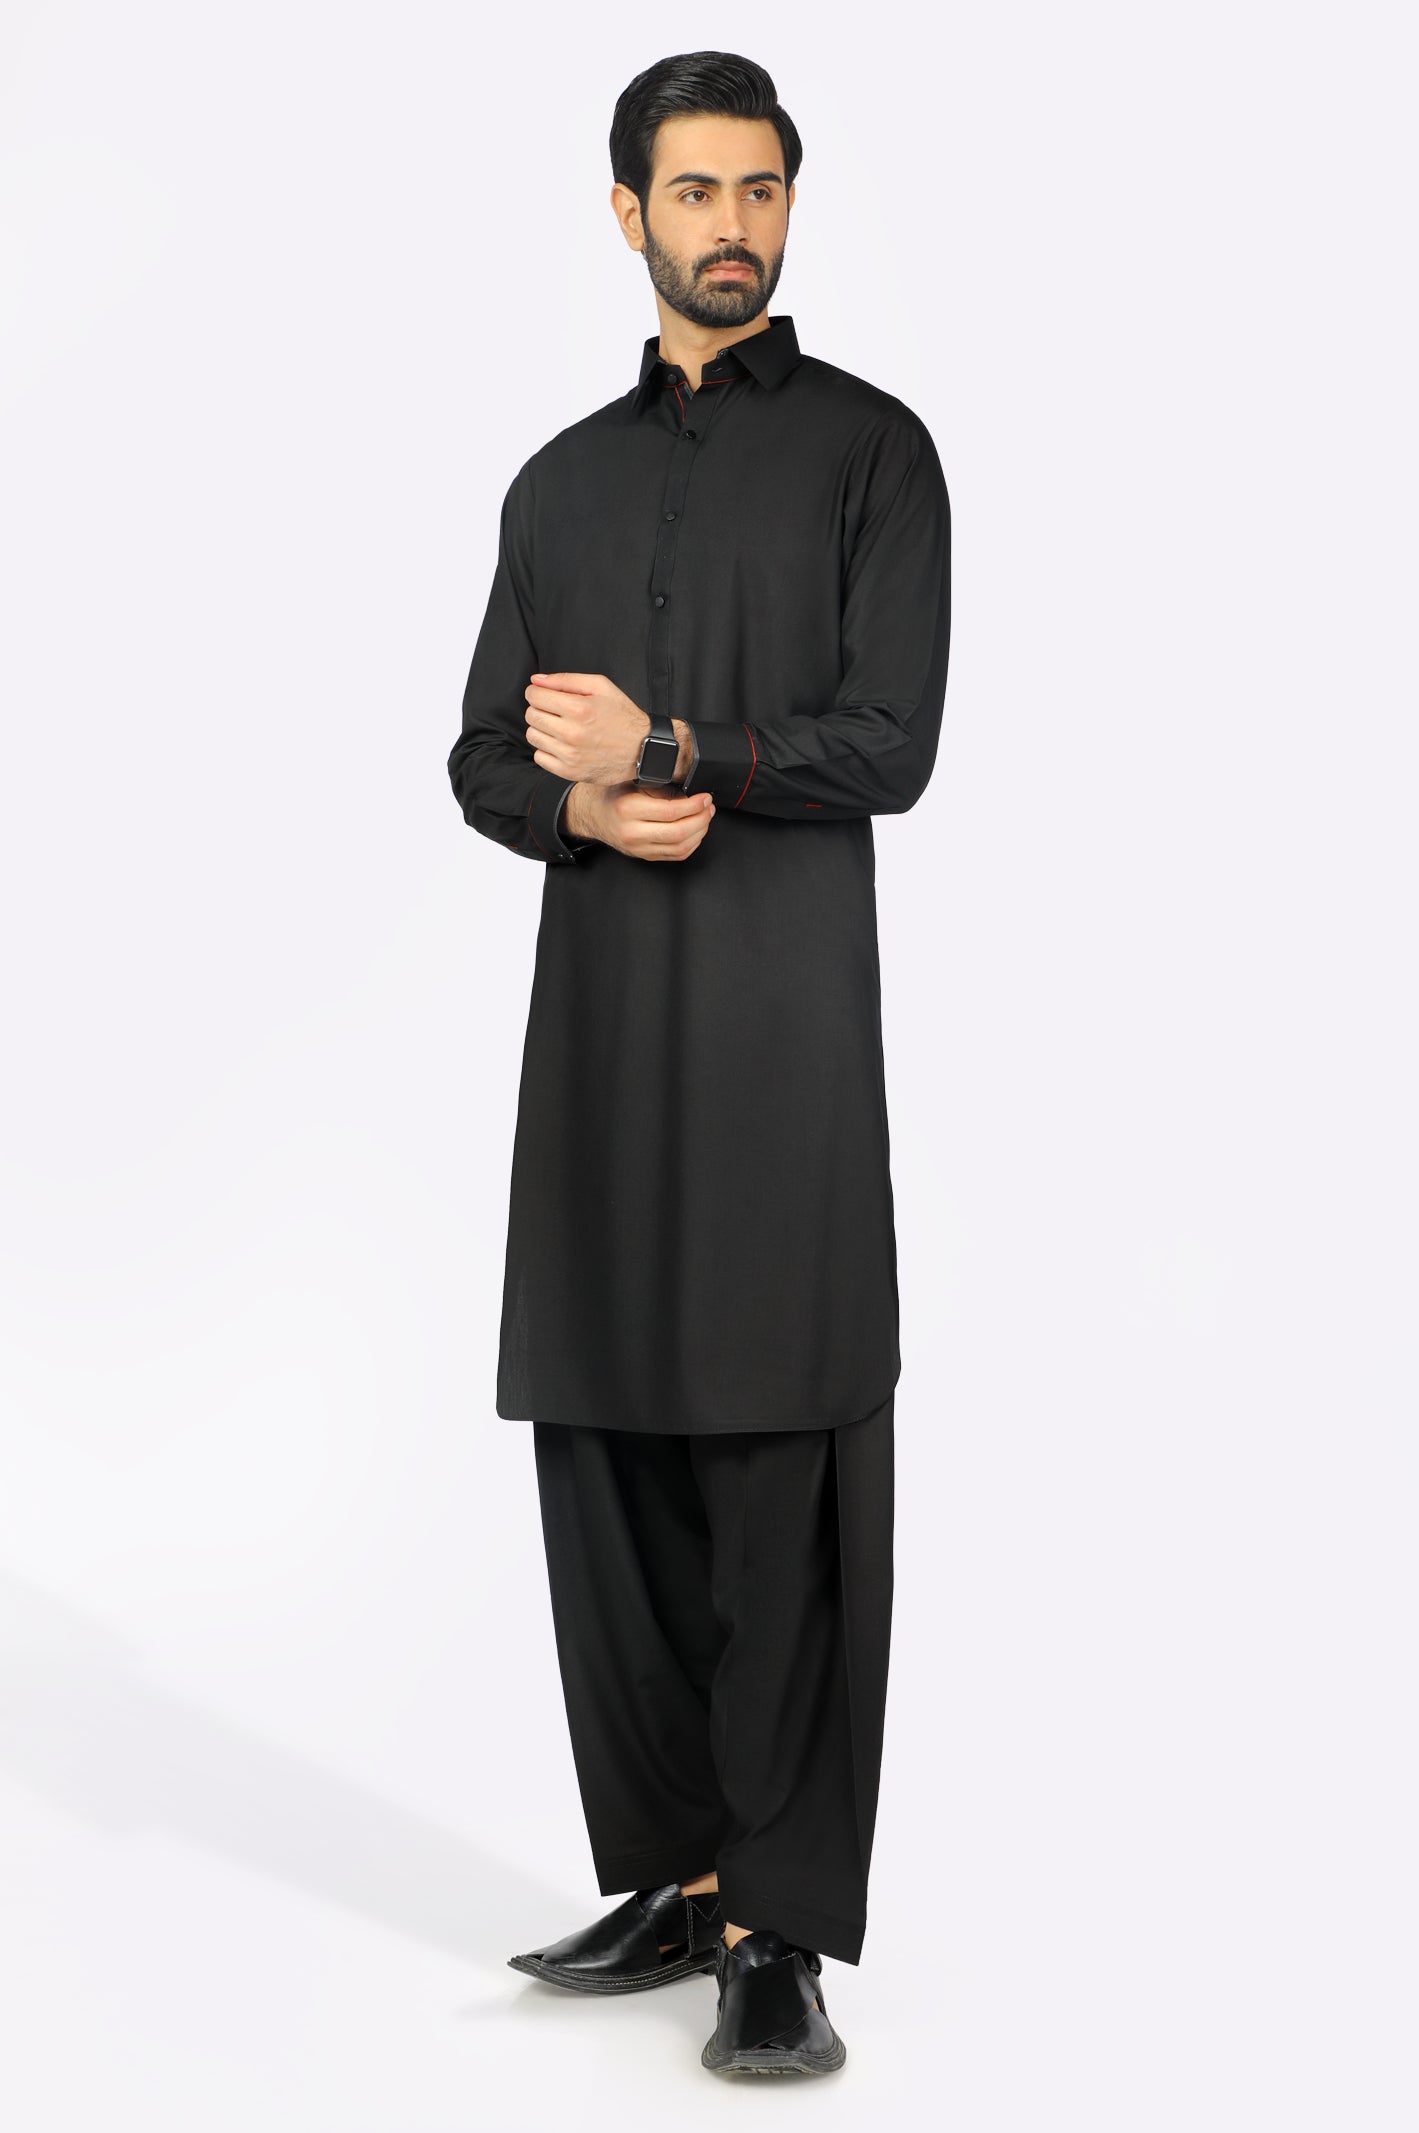 Black Wash & Wear Shalwar Kameez From Diners